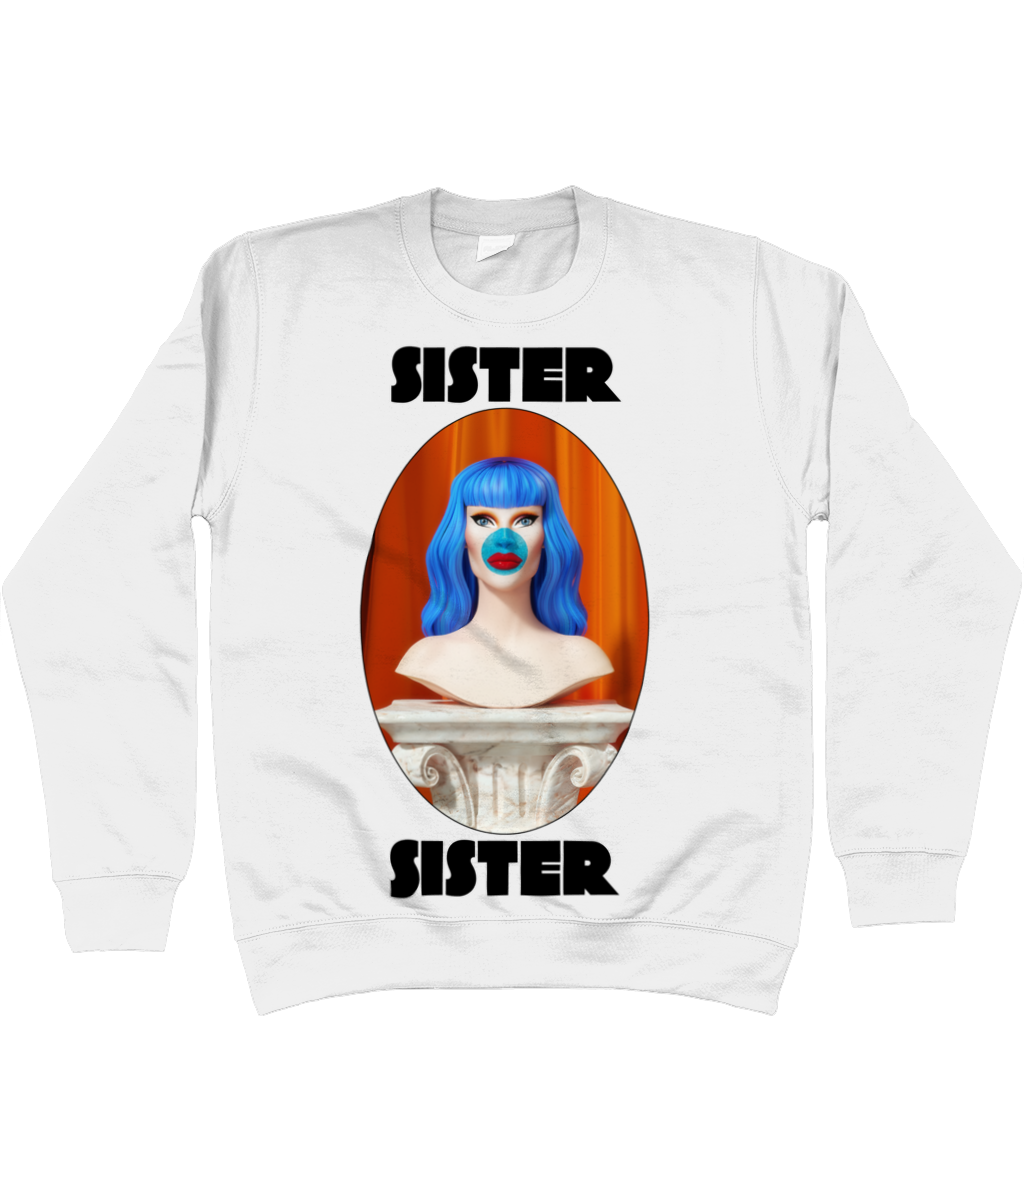 Sister Sister - Bust Sweatshirt